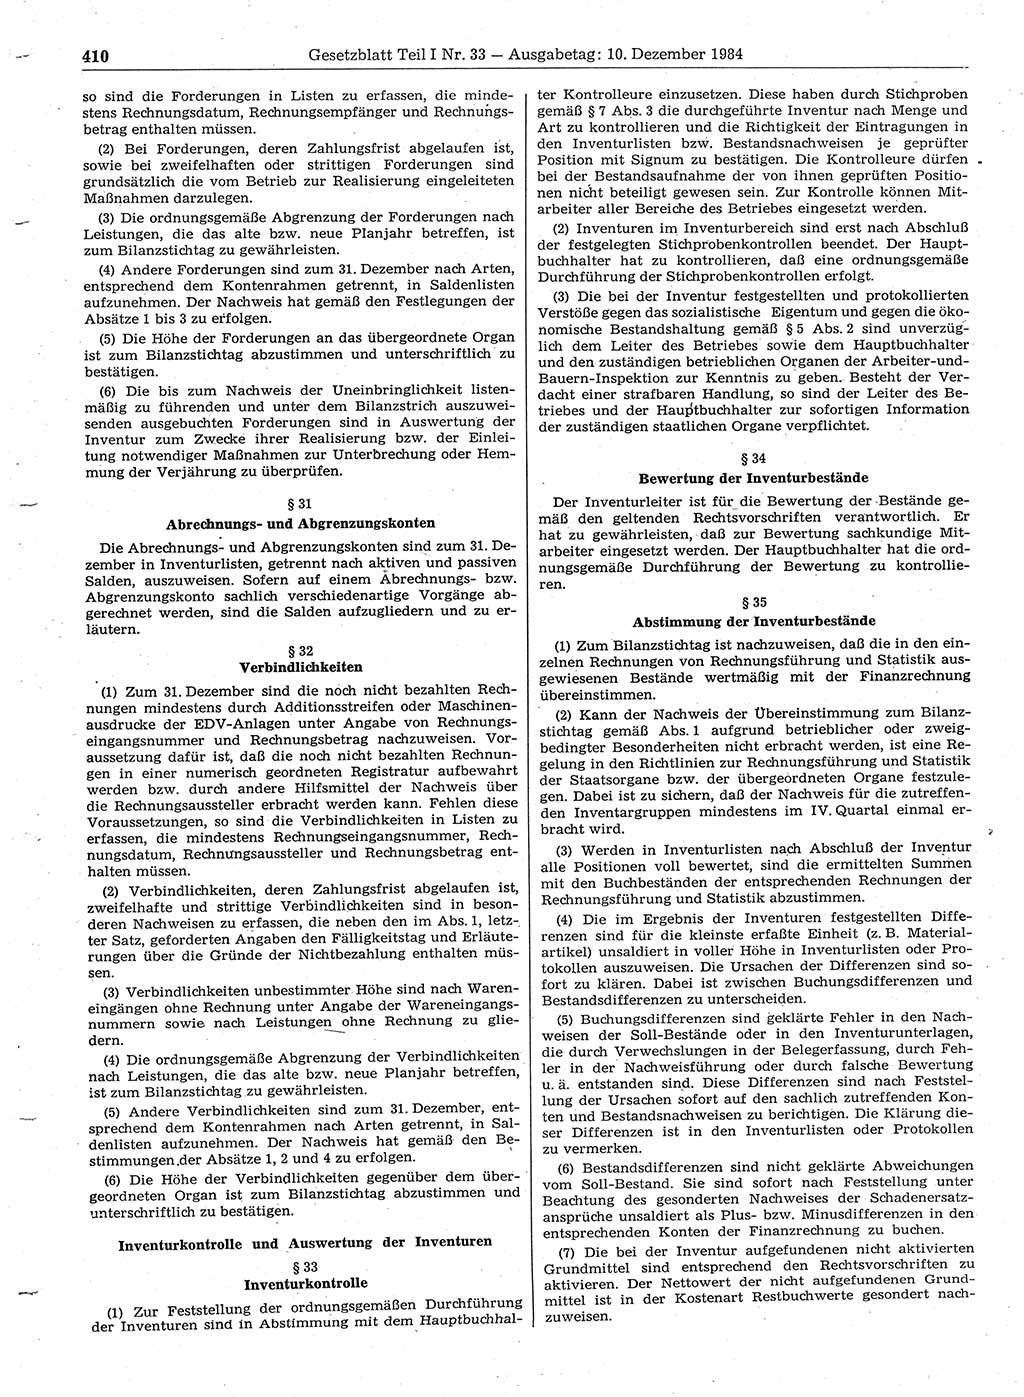 Gesetzblatt (GBl.) der Deutschen Demokratischen Republik (DDR) Teil Ⅰ 1984, Seite 410 (GBl. DDR Ⅰ 1984, S. 410)